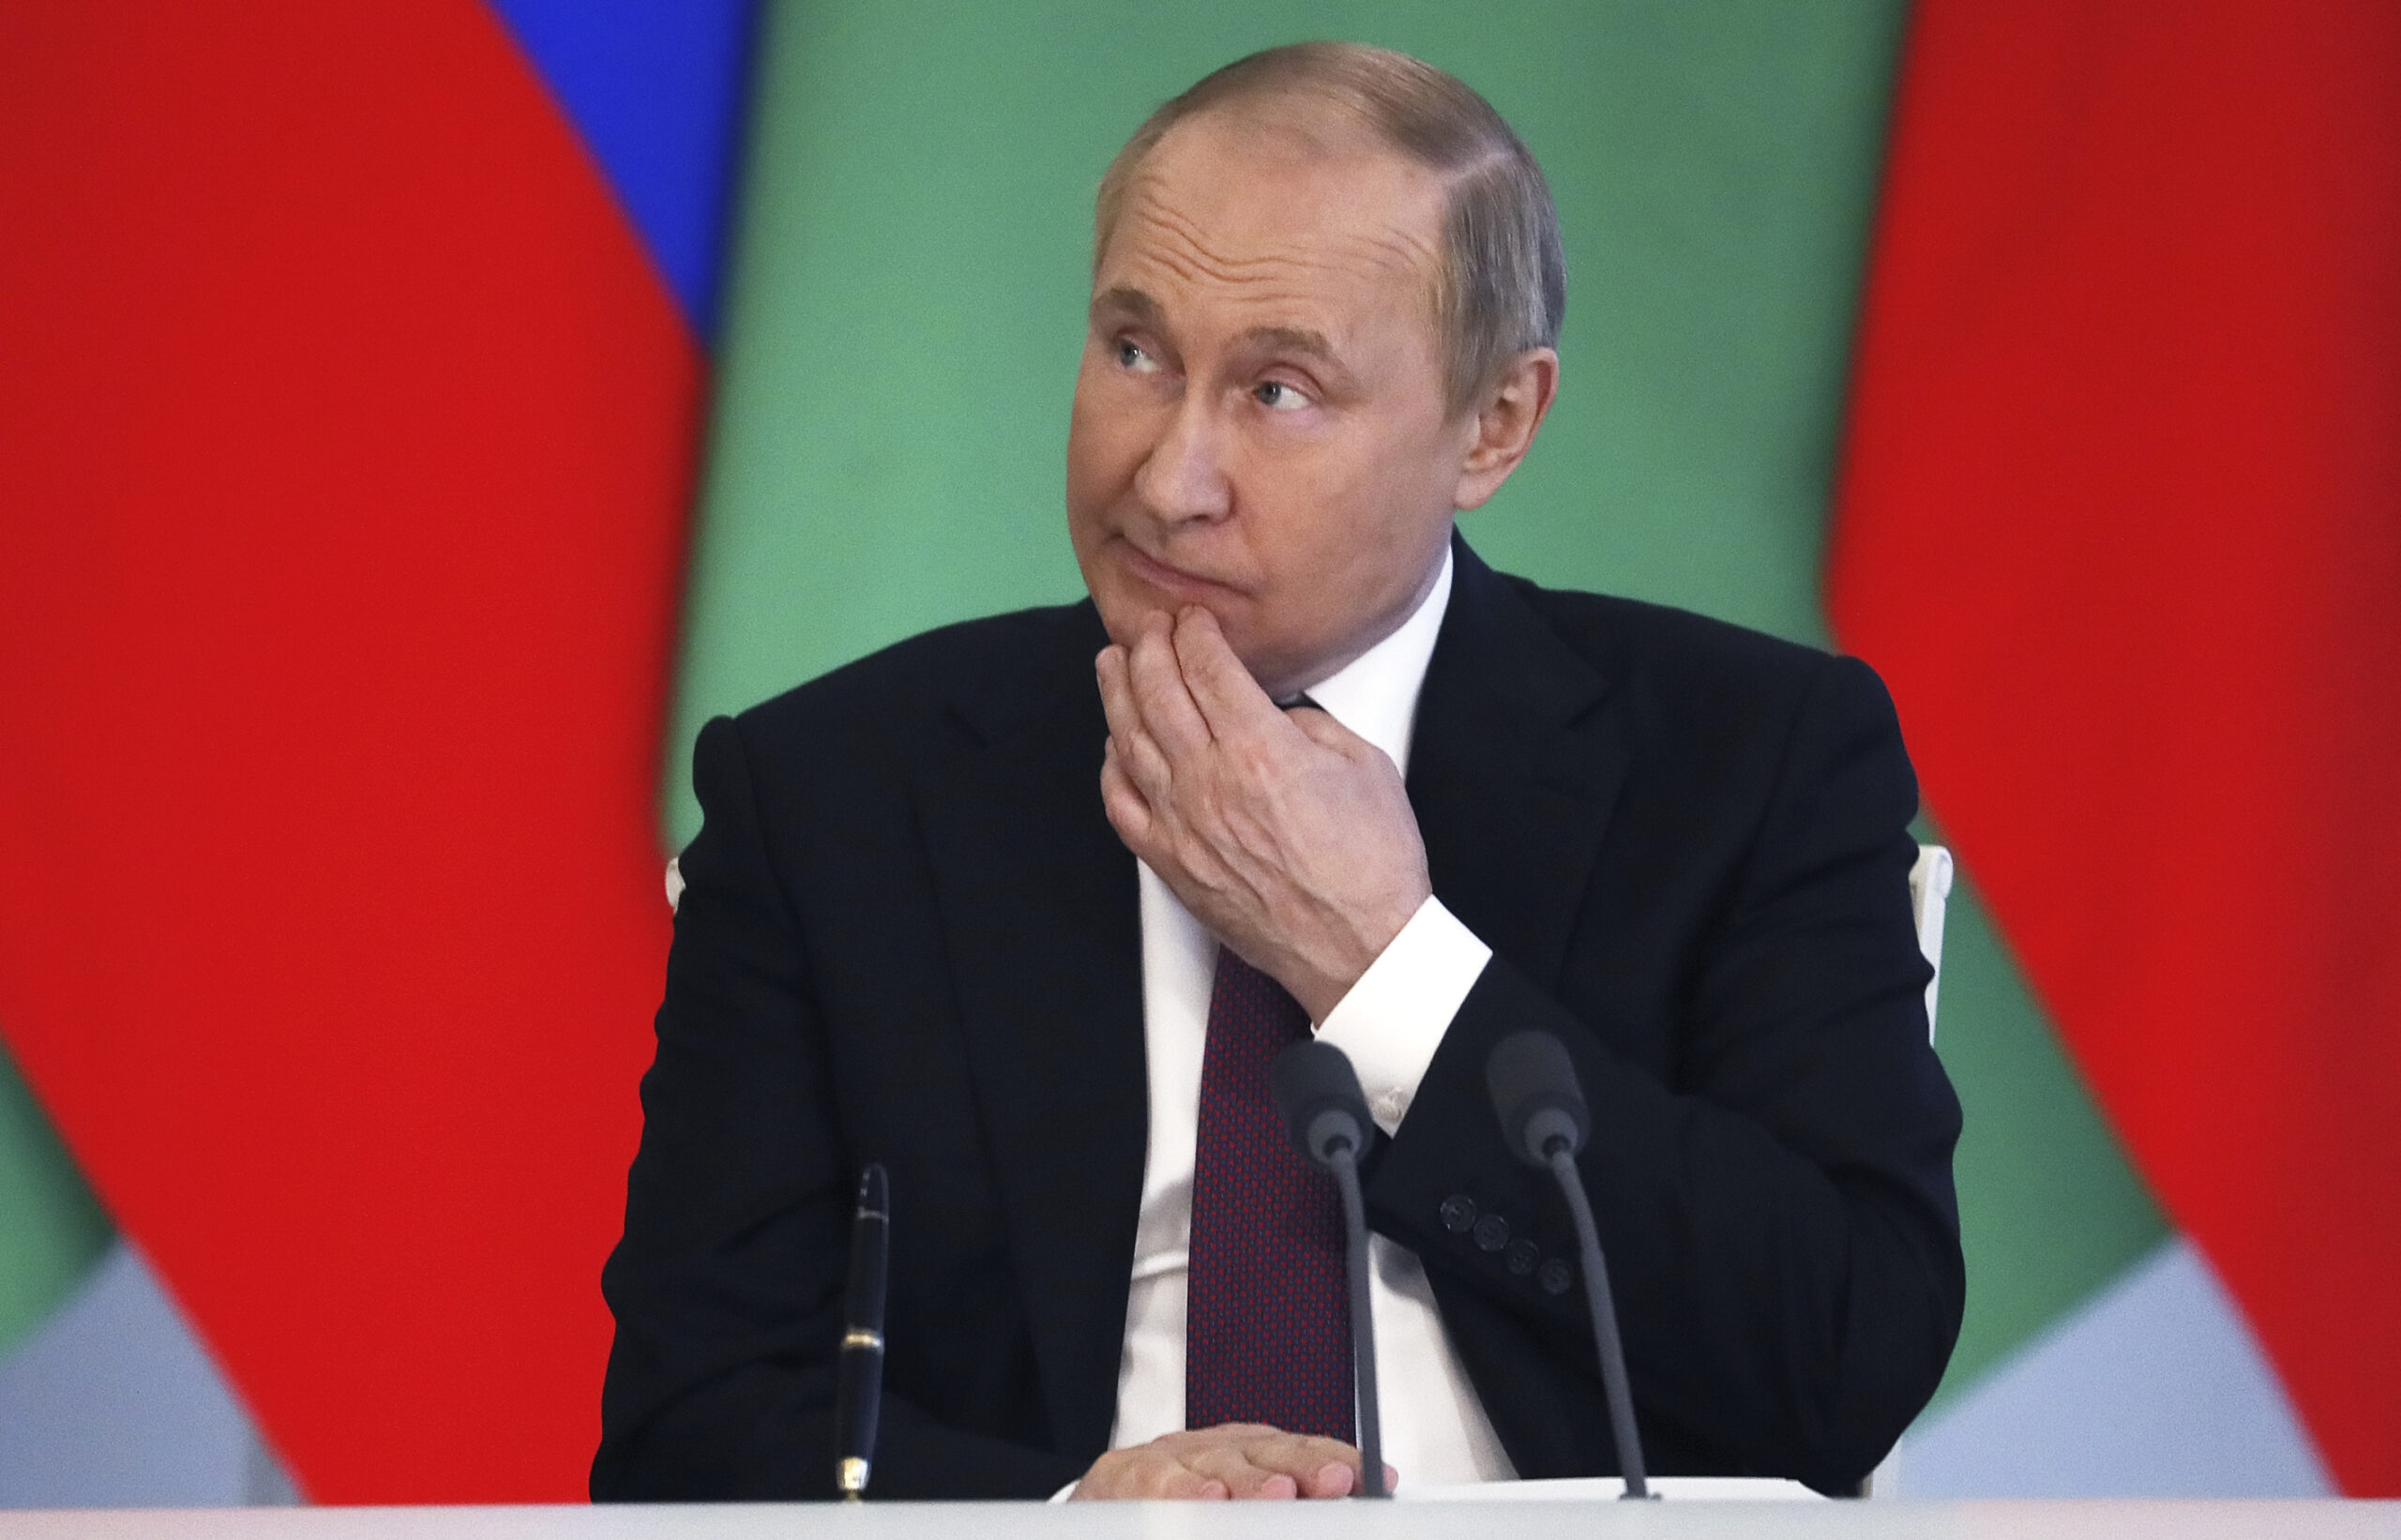 Wladimir Putin, Präsident von Russland, kratzt sich am Kinn